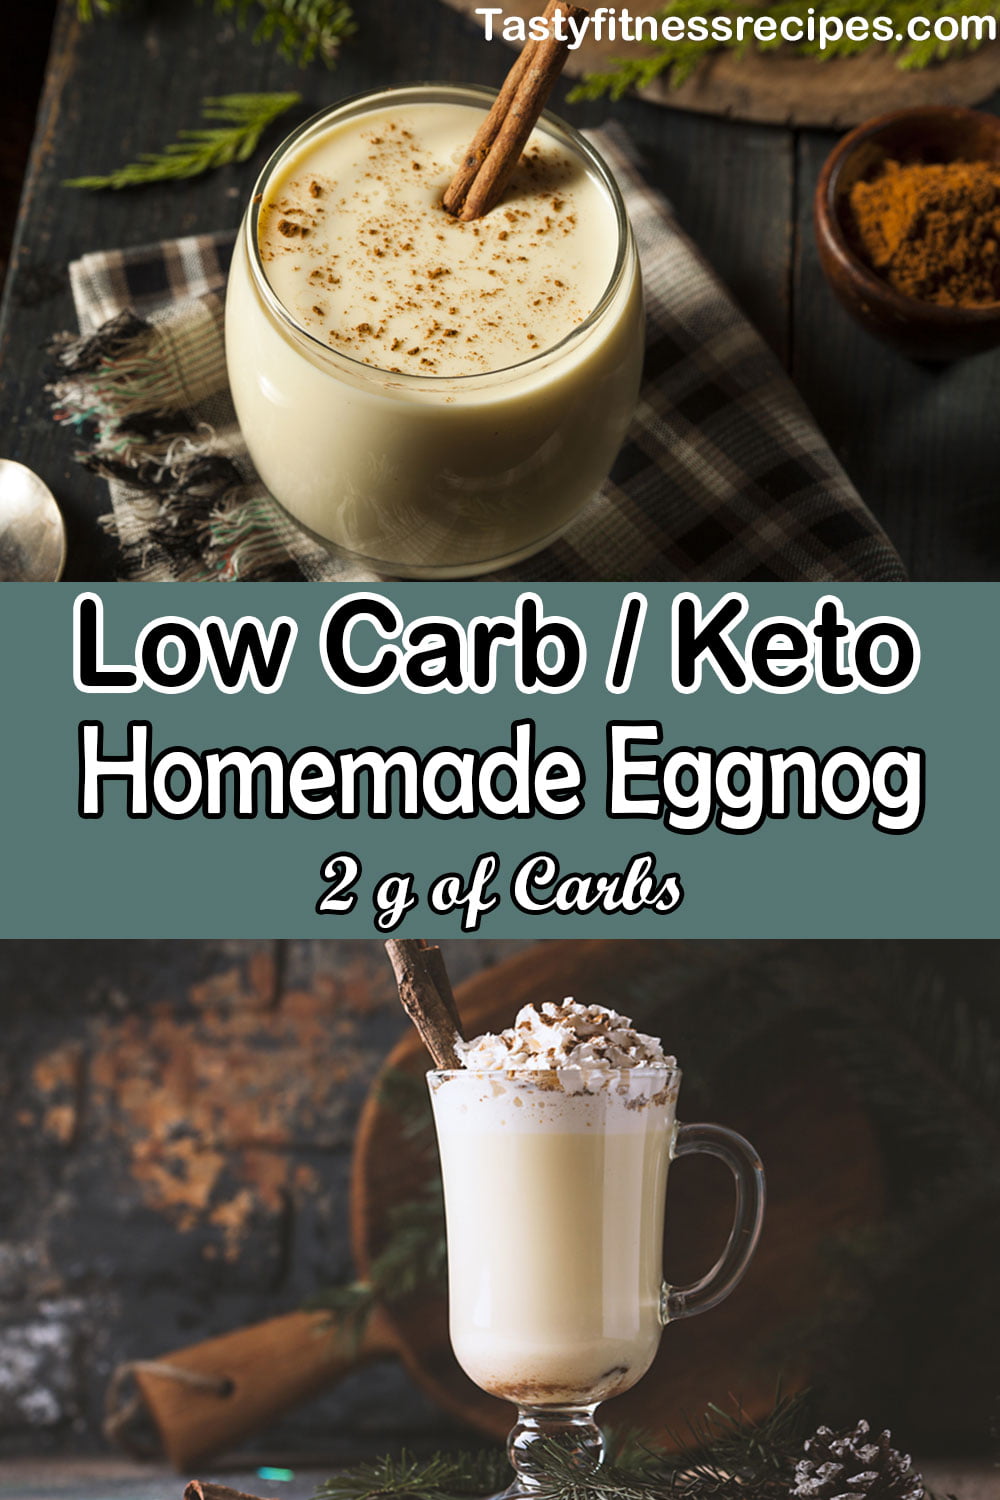 Low Carb Keto Eggnog